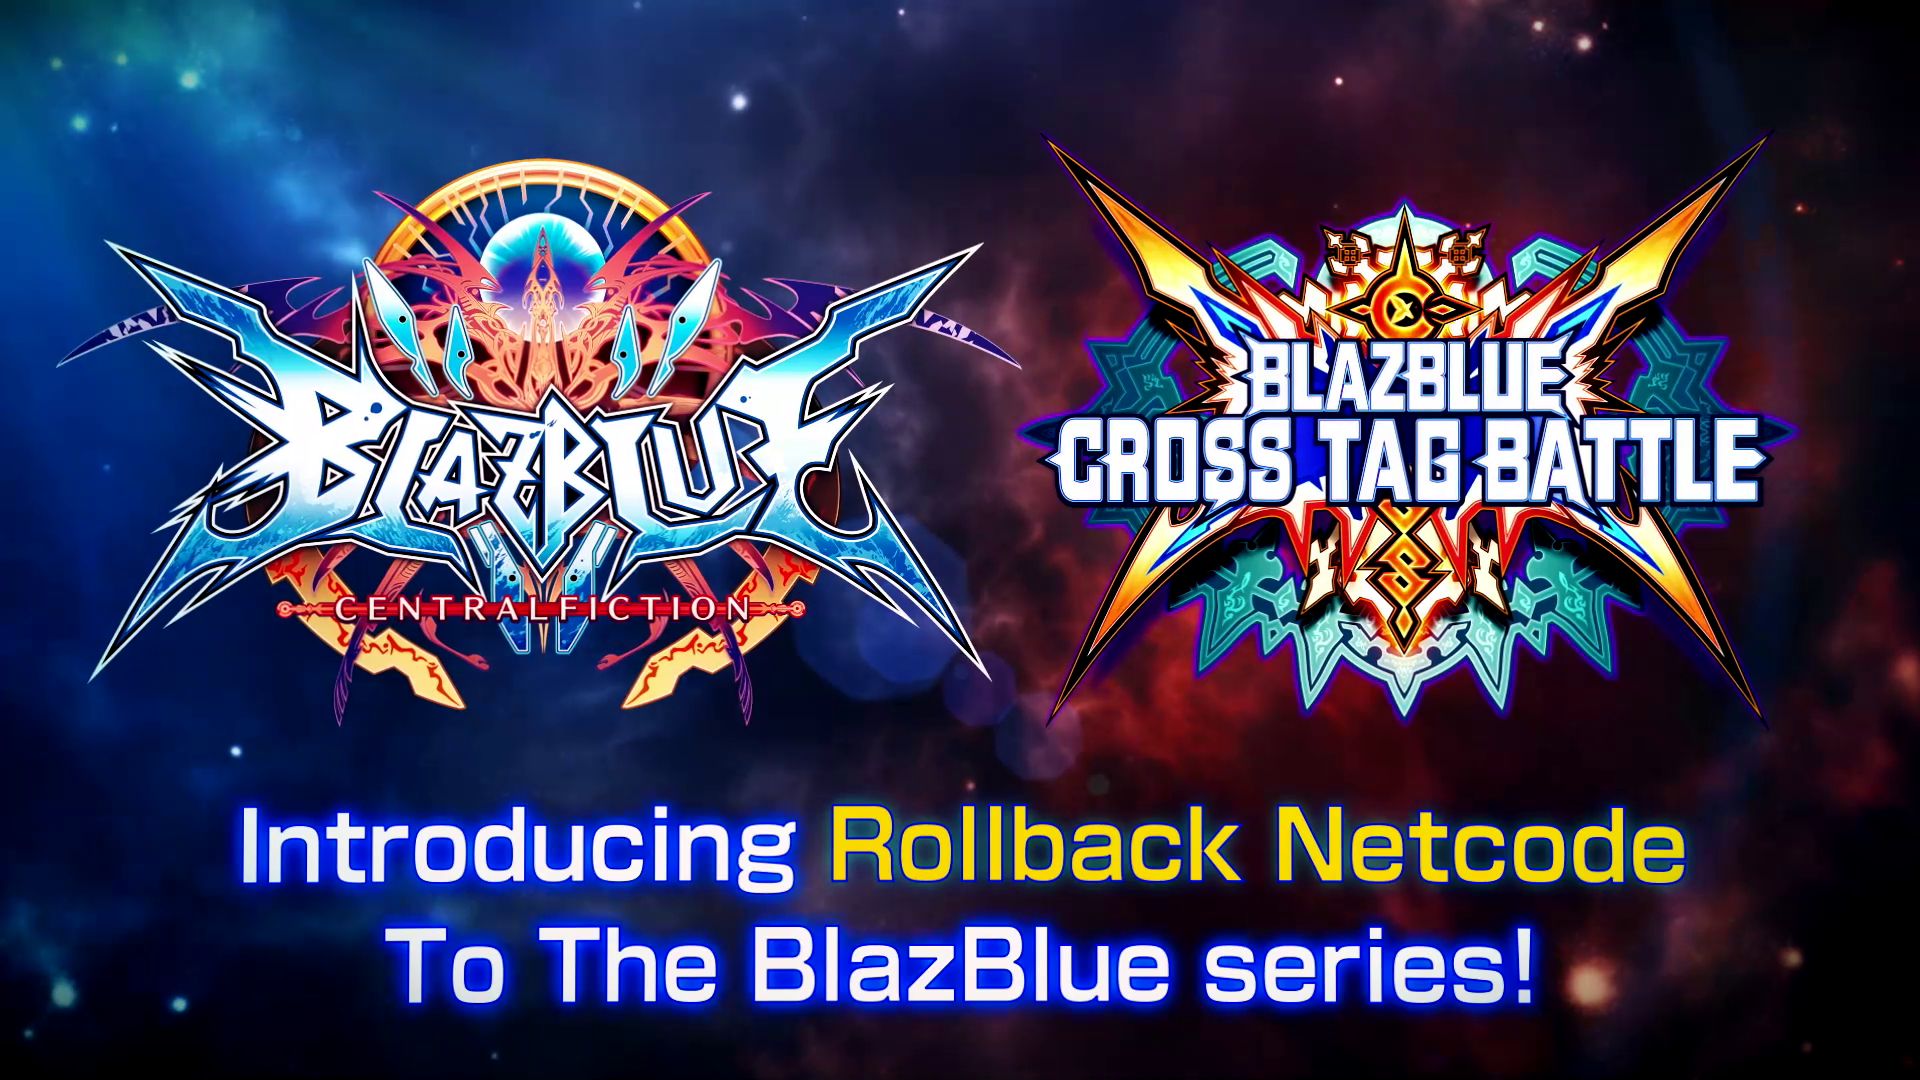 BlazBlue Rollback Netcode has been announced!